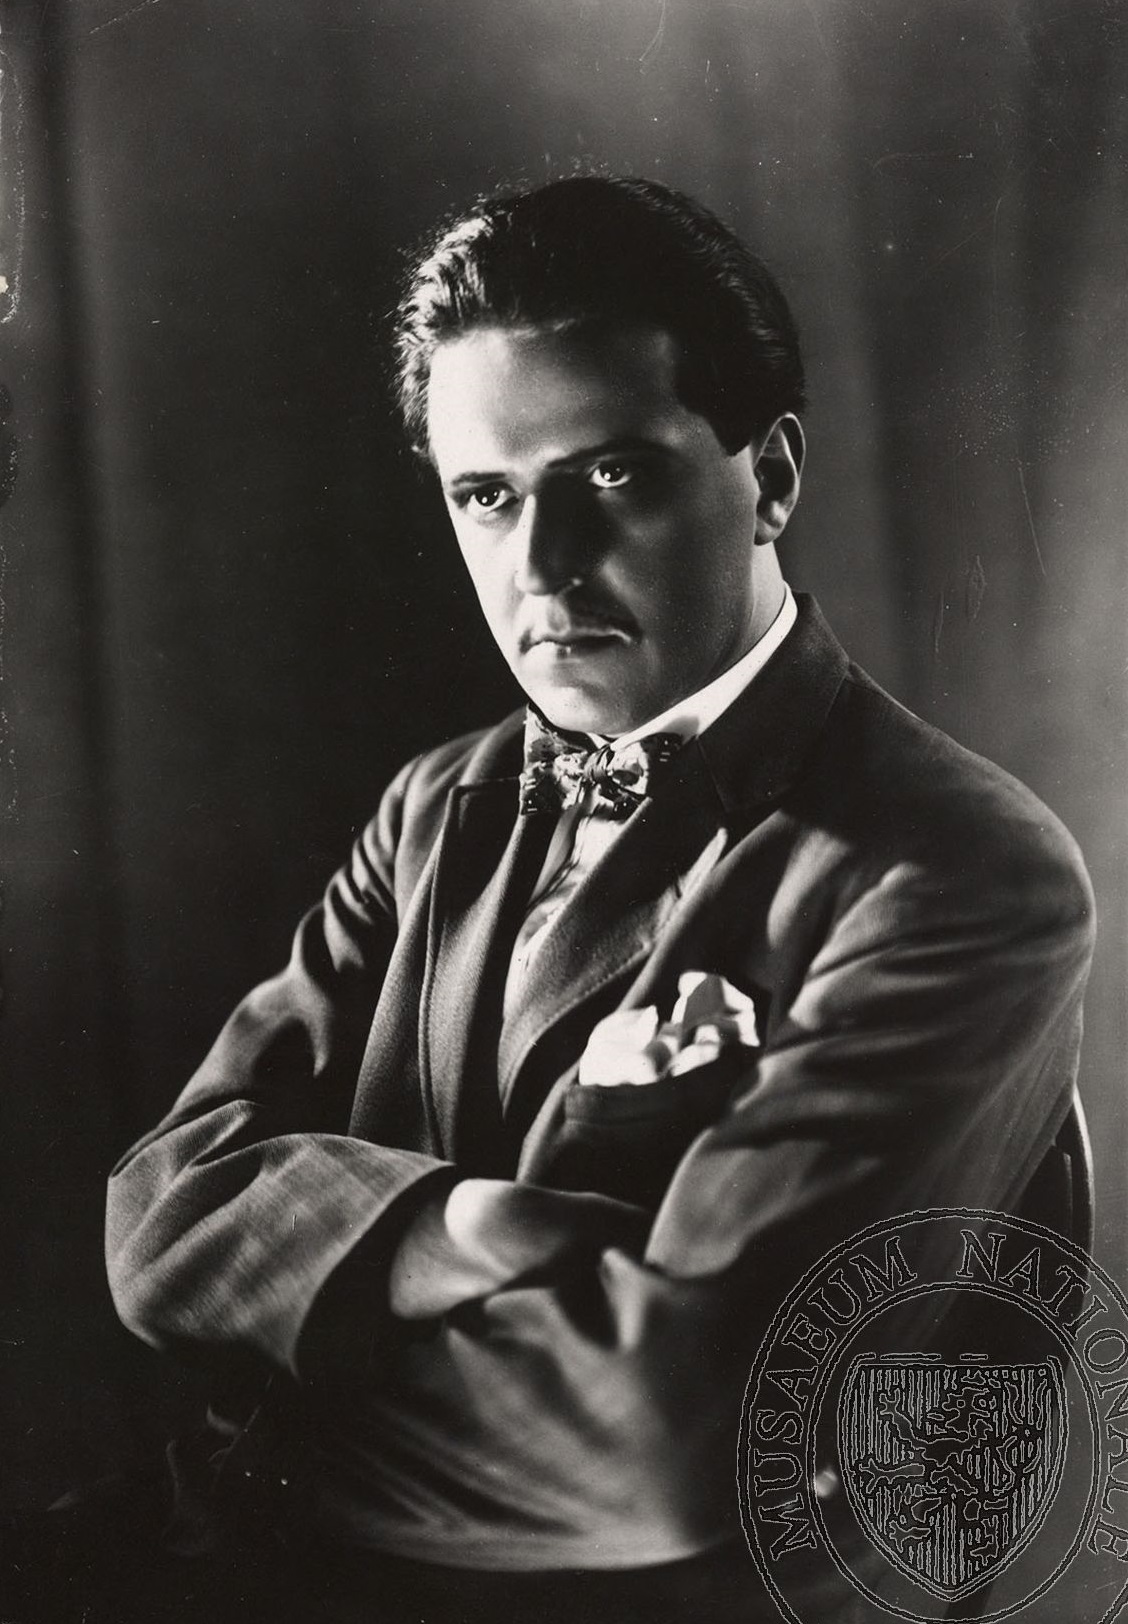 Hugo Haas na civilní fotografii, 1926, fotograf neuveden. Sbírka Národního muzea, Divadelní oddělení, sign. II F 975.